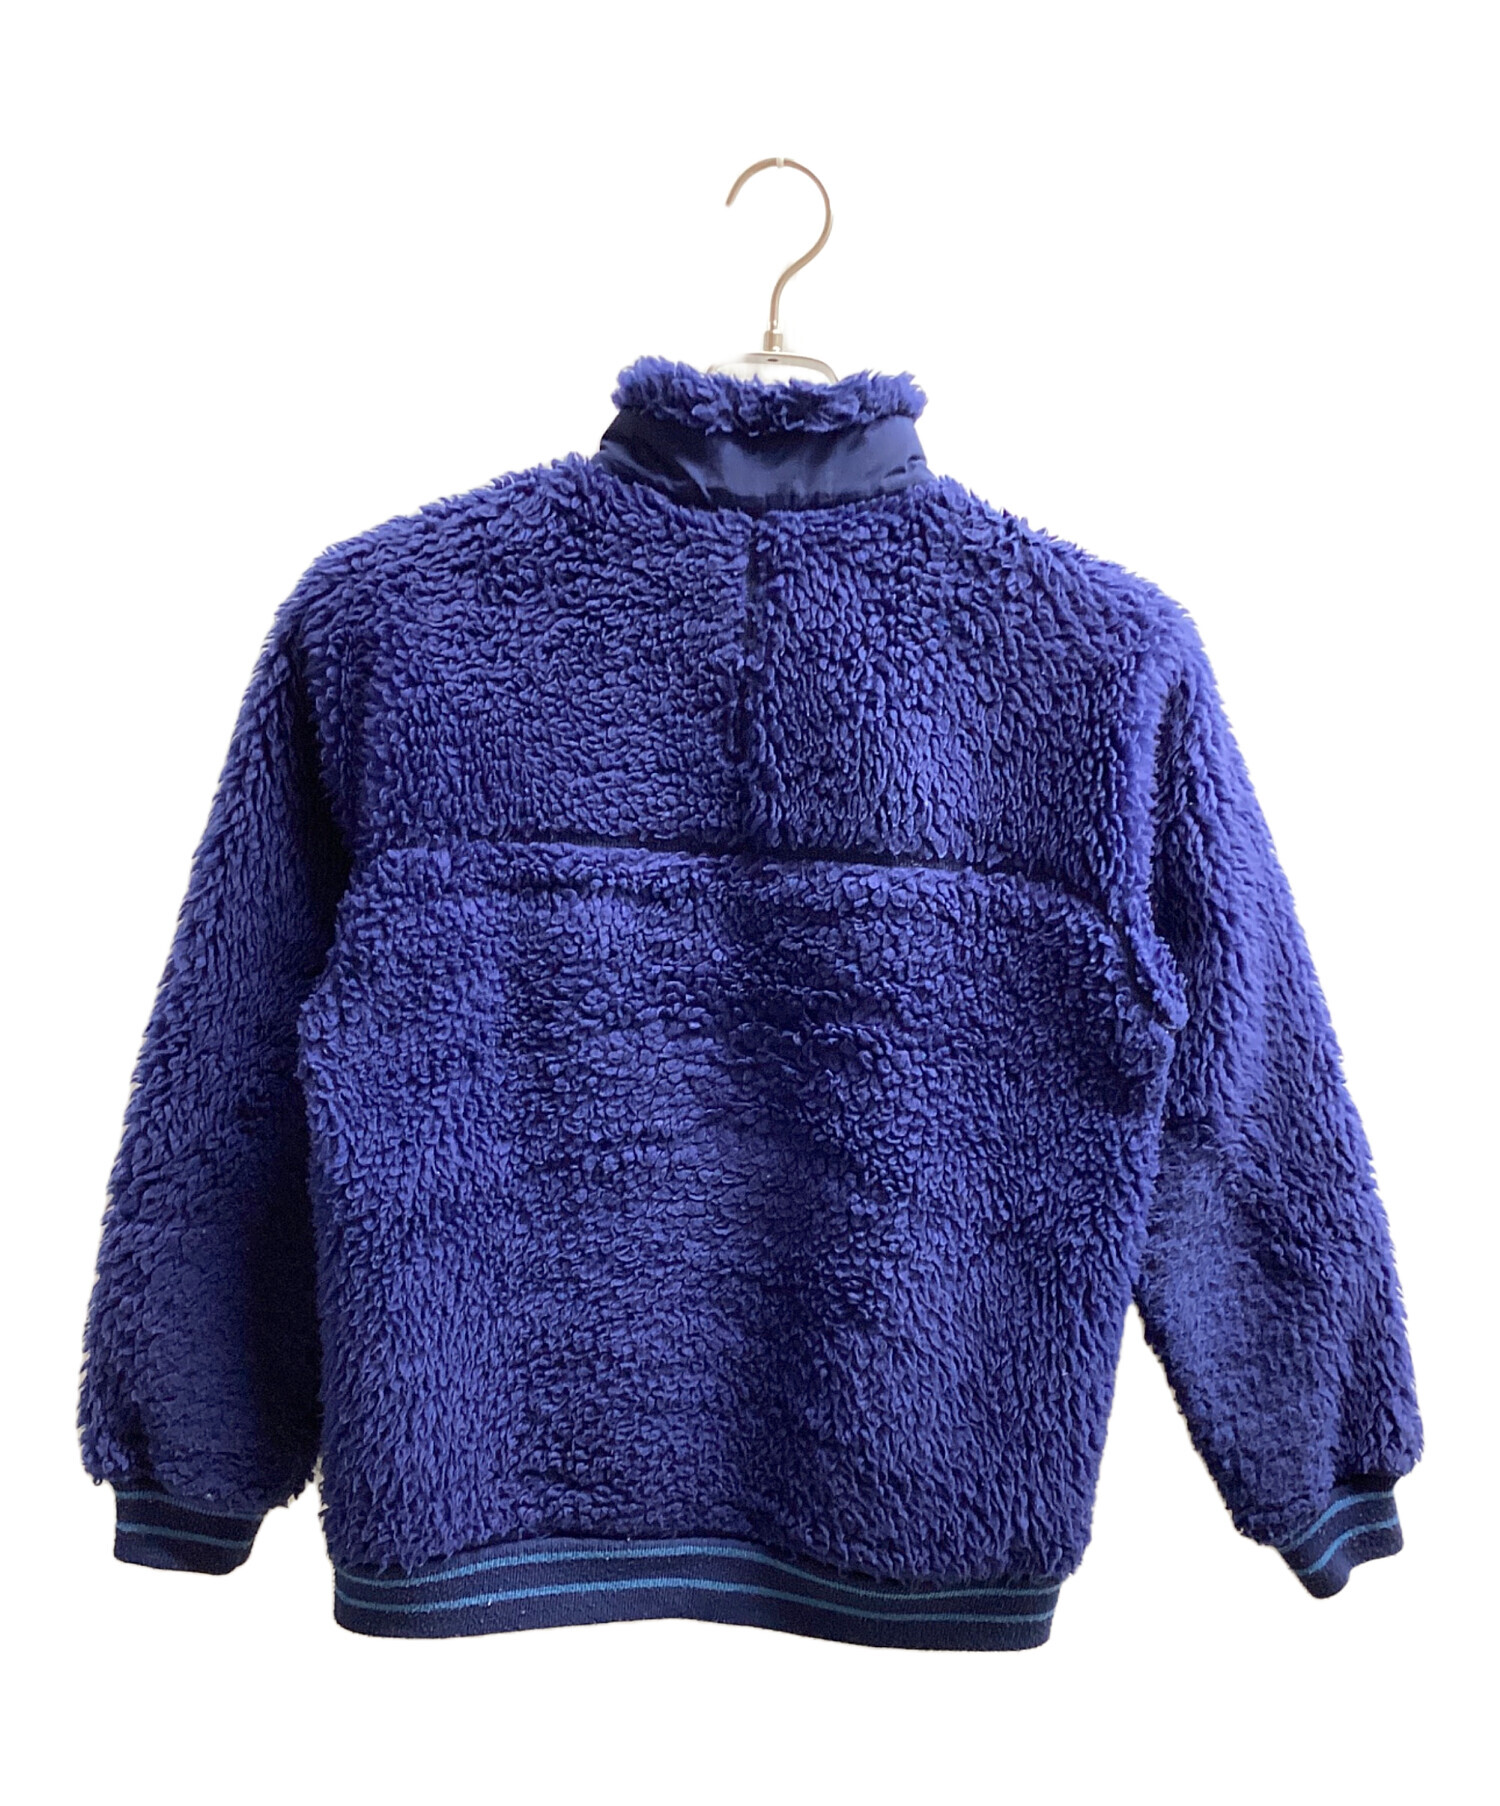 Patagonia (パタゴニア) フリースジャケット ブルー サイズ:XL(14)